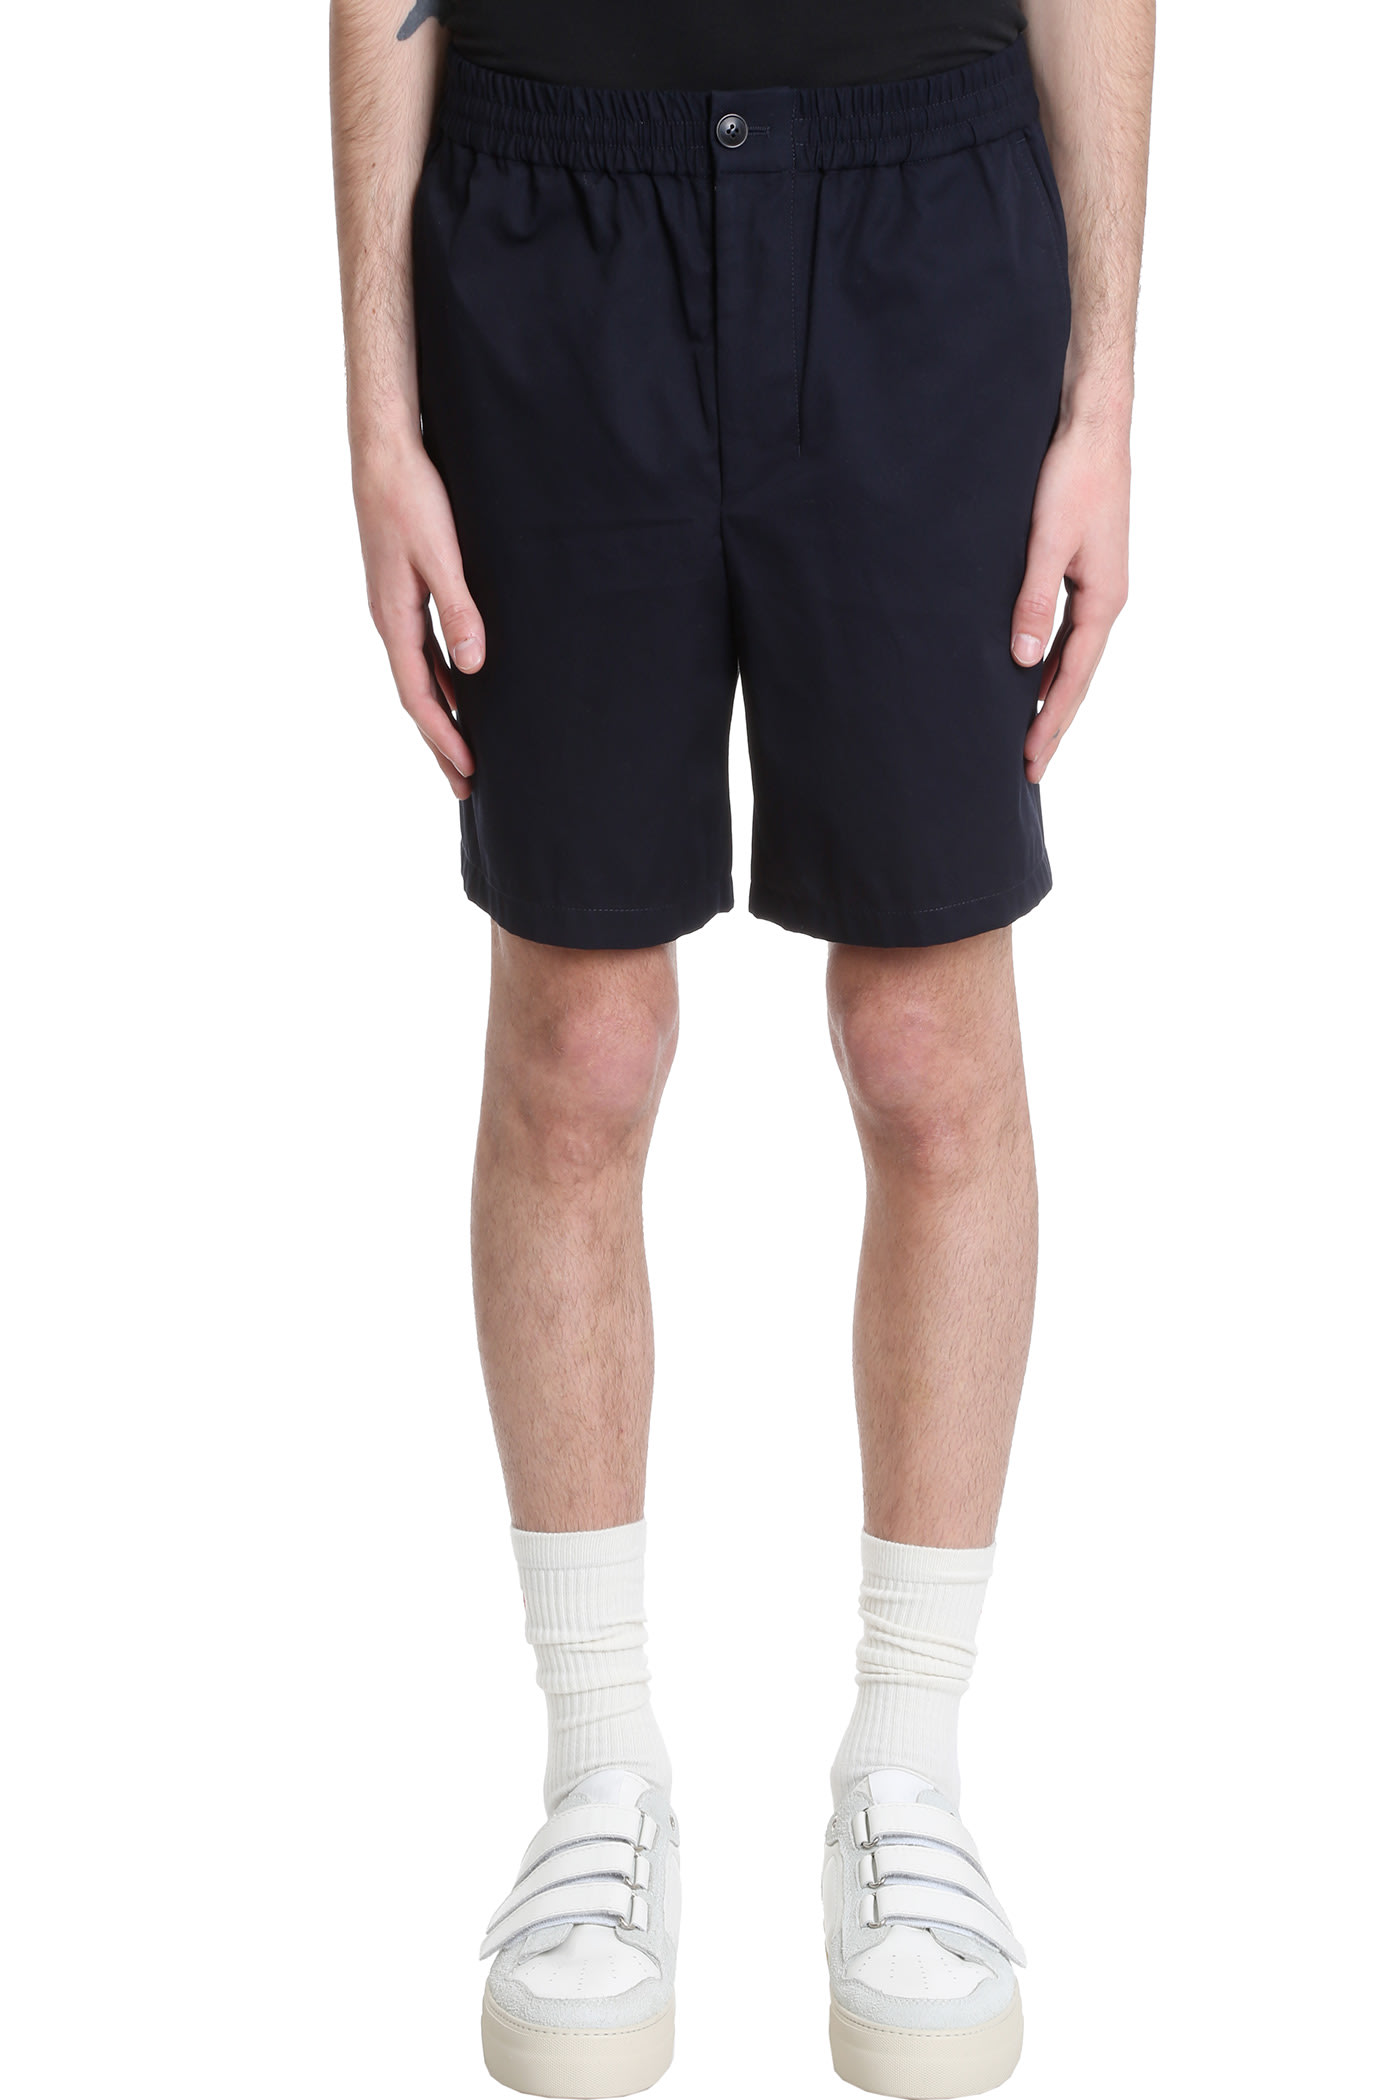 Ami Alexandre Mattiussi Shorts In Blue Cotton